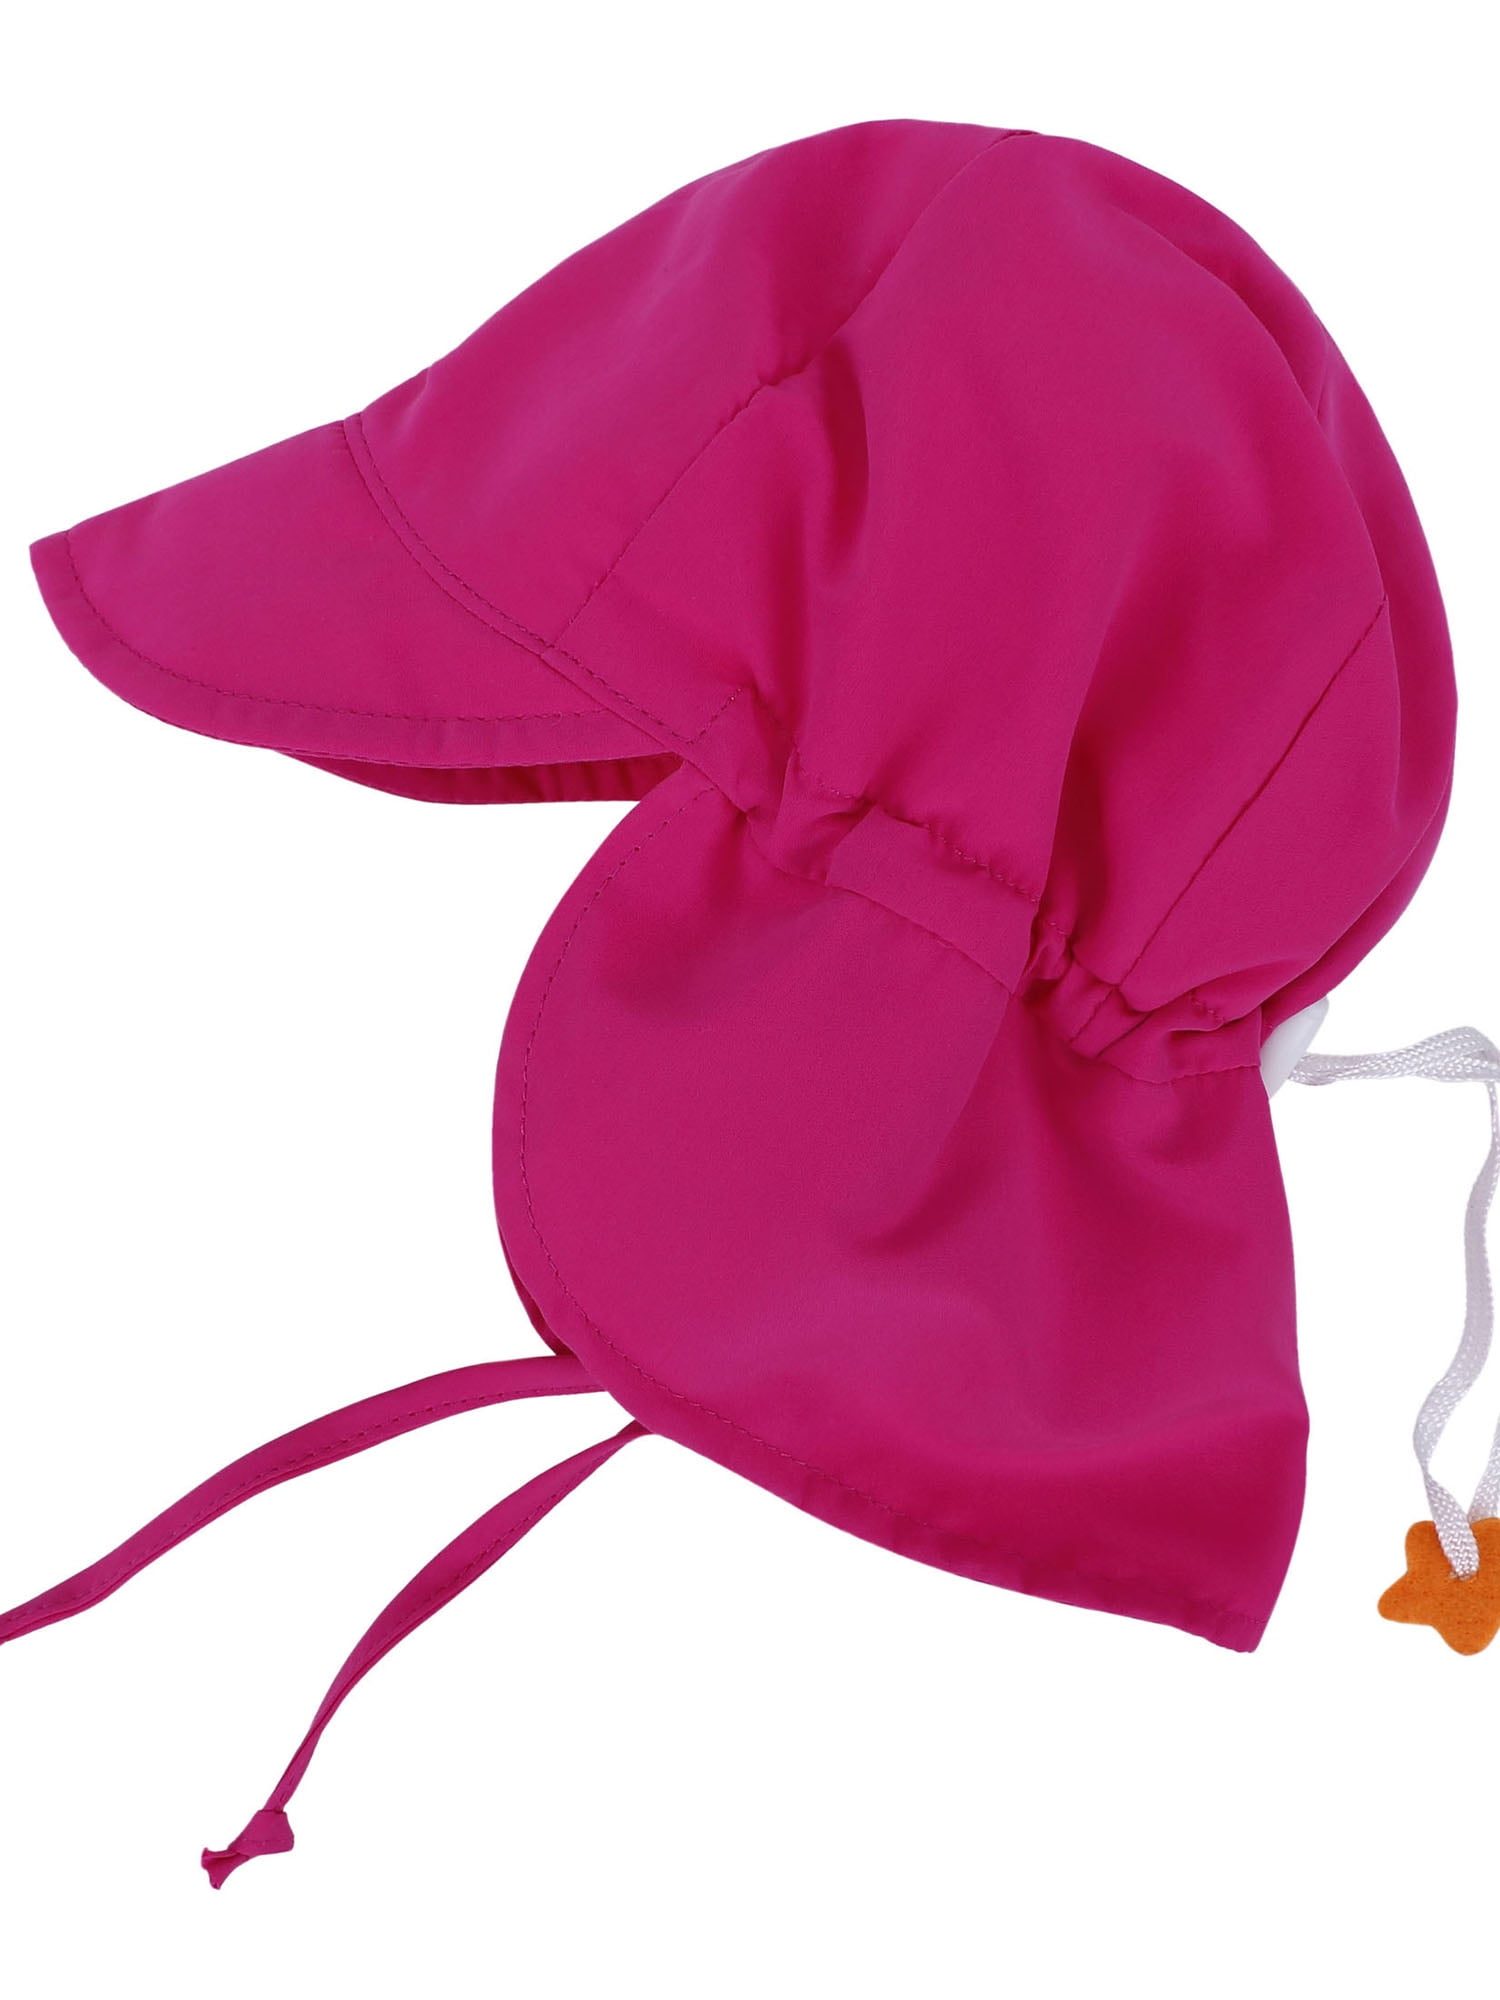 Kids Toddler Baby Solid Color Sun Hat Flap Swim Hat Rose Pink - Walmart.com